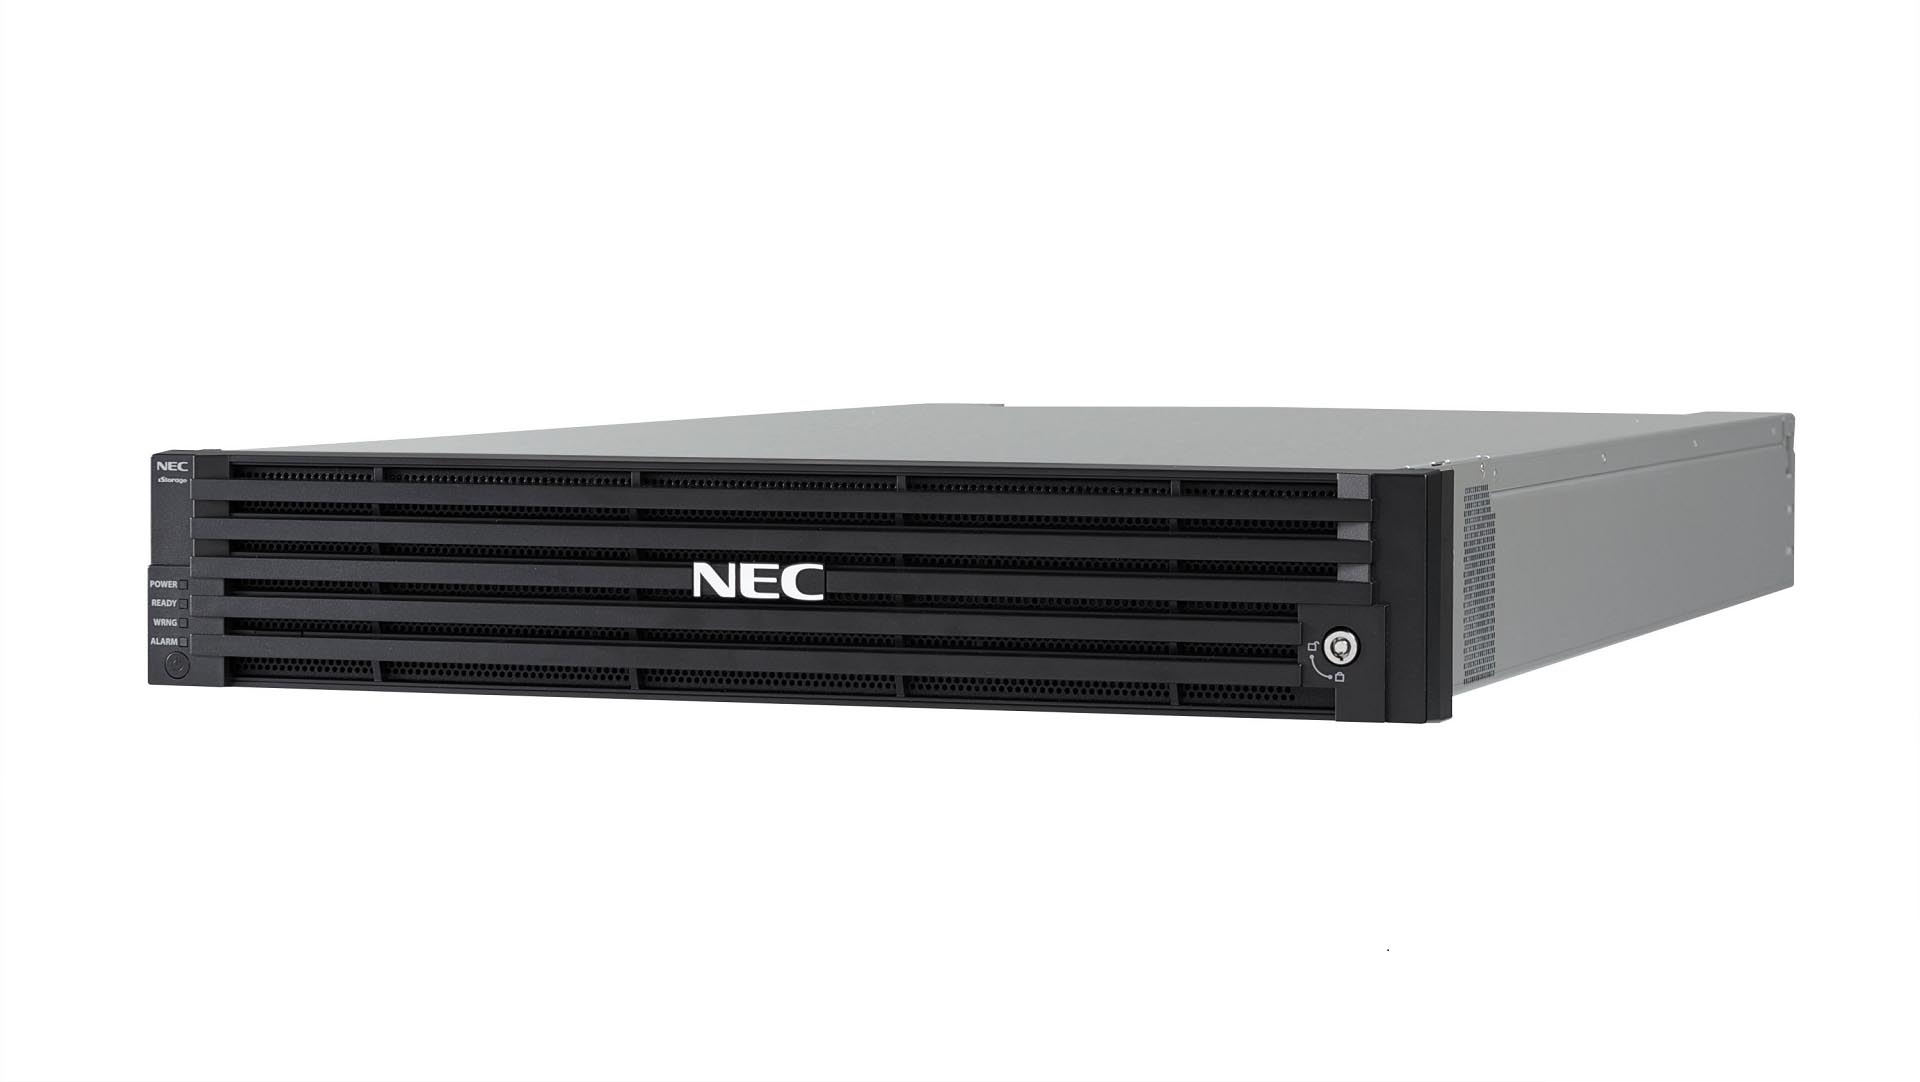 NEC、ラックマウントストレージ「iStorage V」にSAS HDD対応のエントリーモデル「V10e」を追加 - ITmedia PC USER